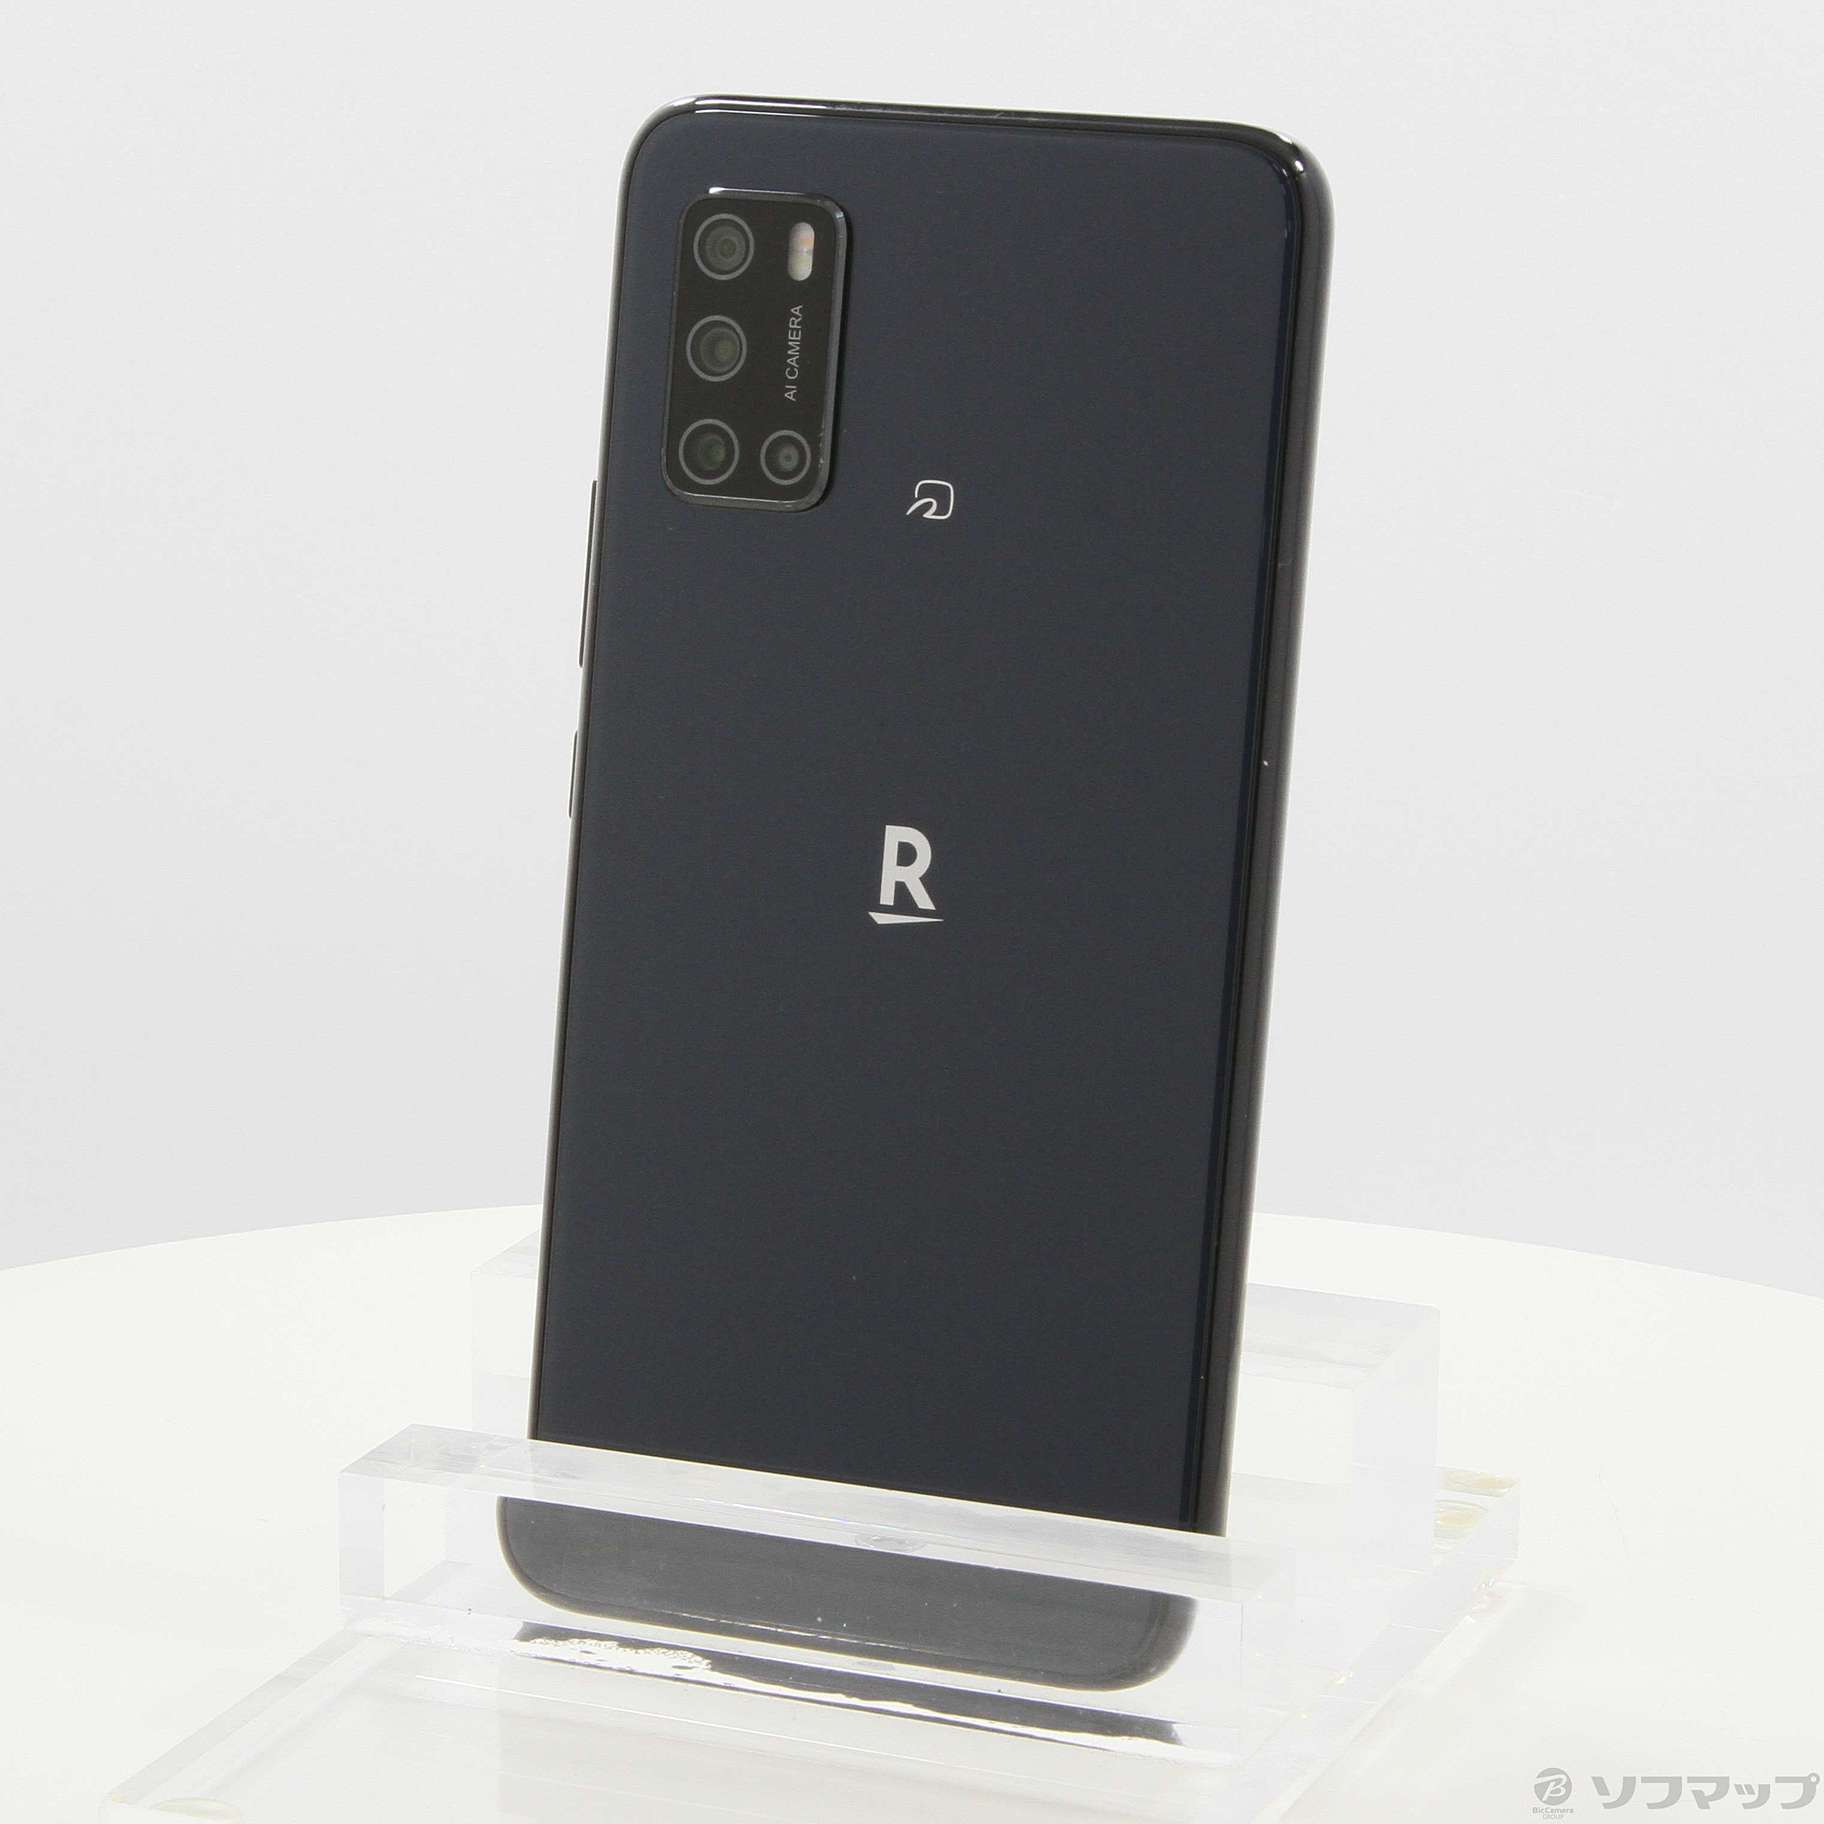 Rakuten Hand 5G 黒 128GB - スマートフォン本体